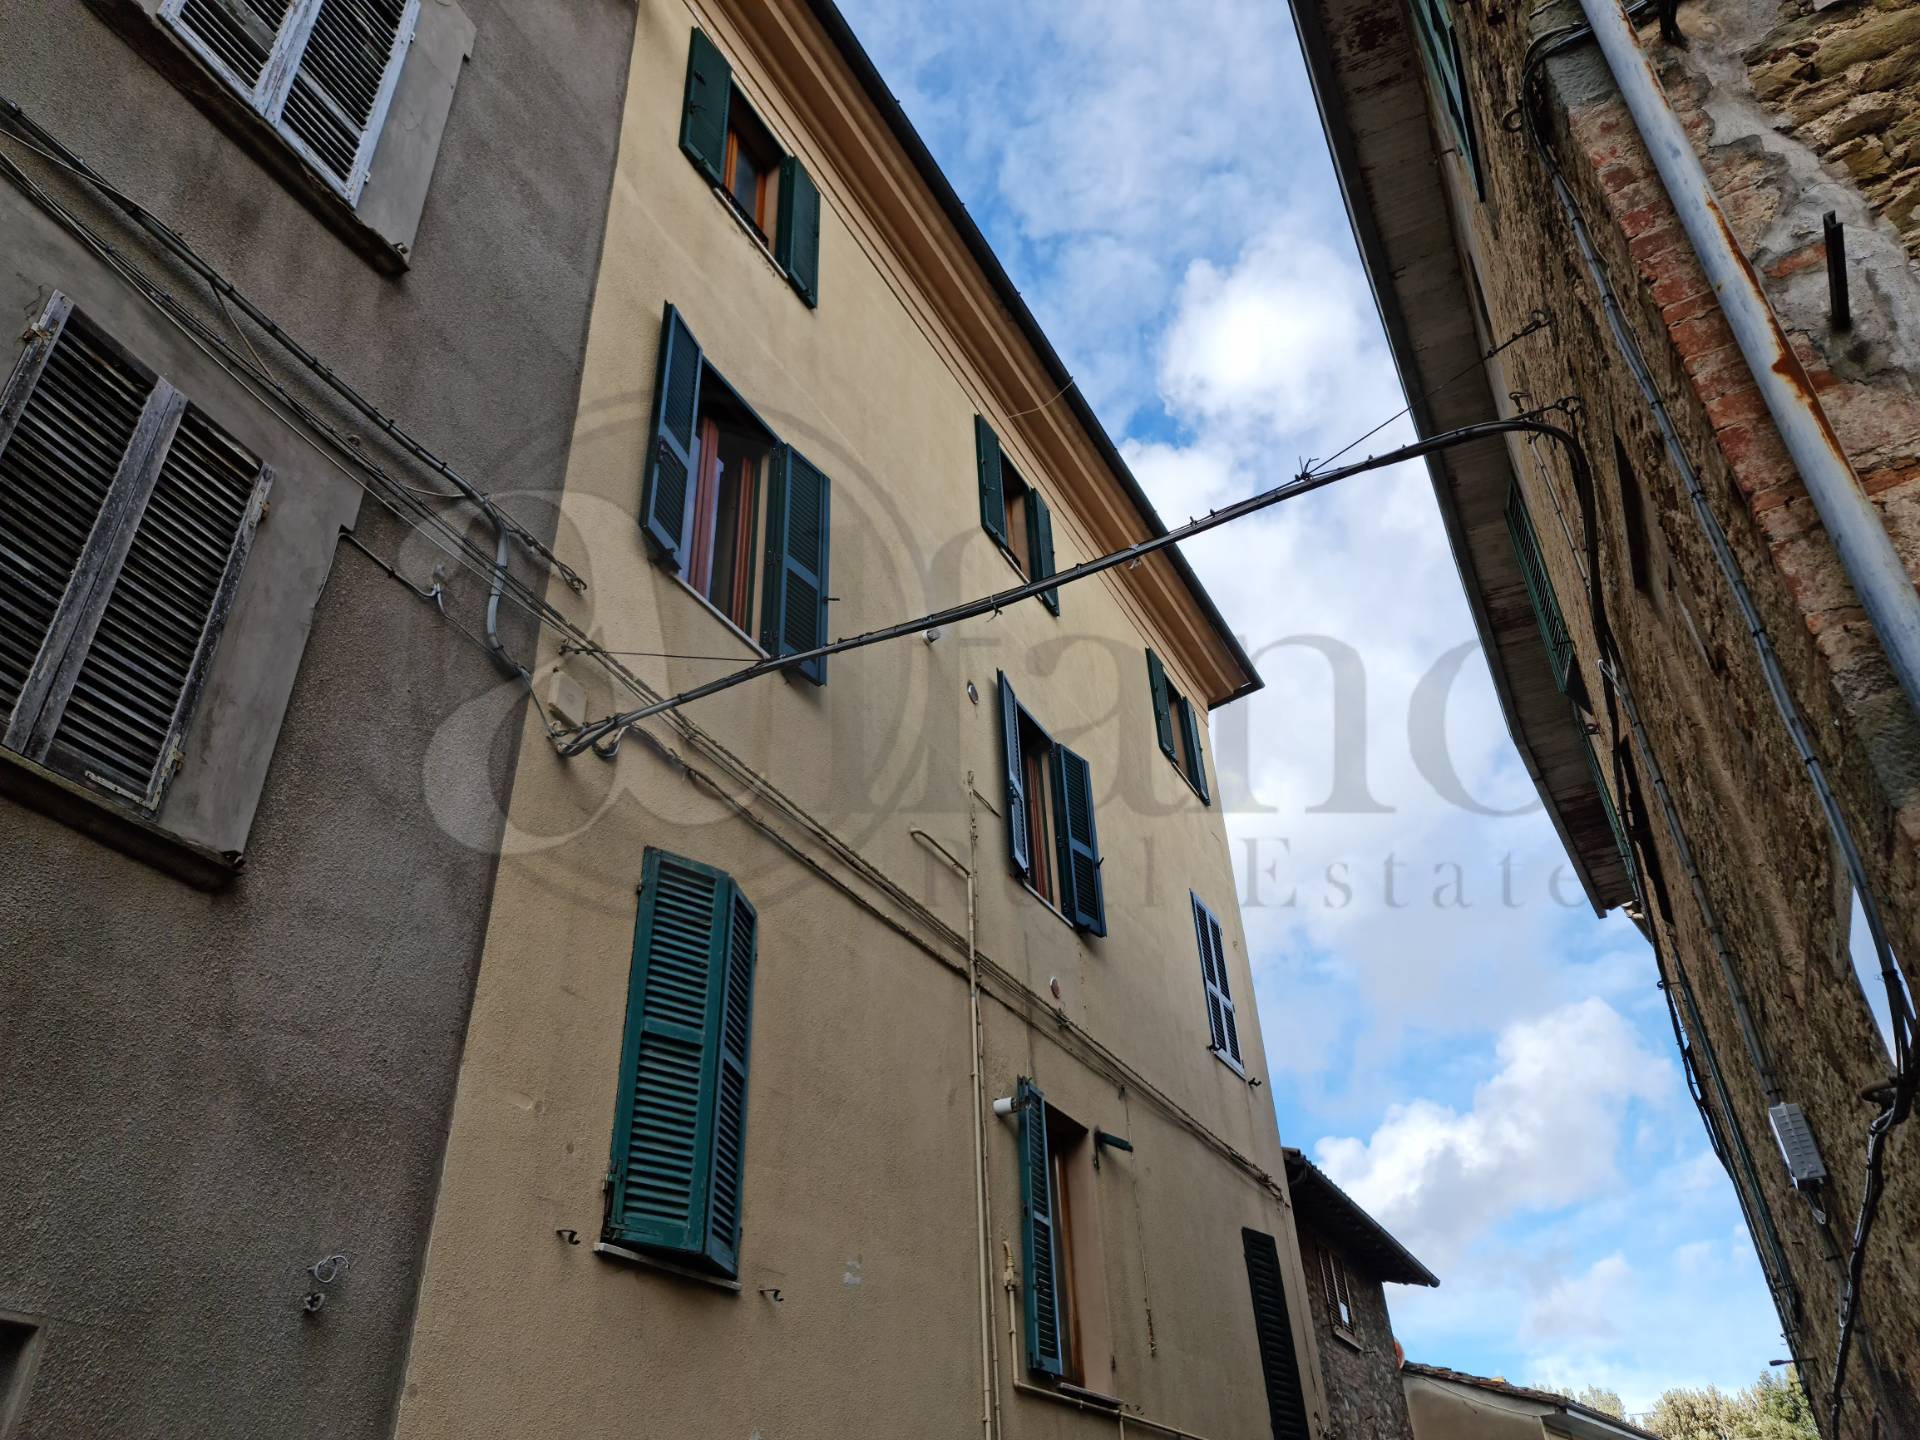 Rustico / Casale in vendita a Piegaro, 9 locali, prezzo € 119.000 | CambioCasa.it